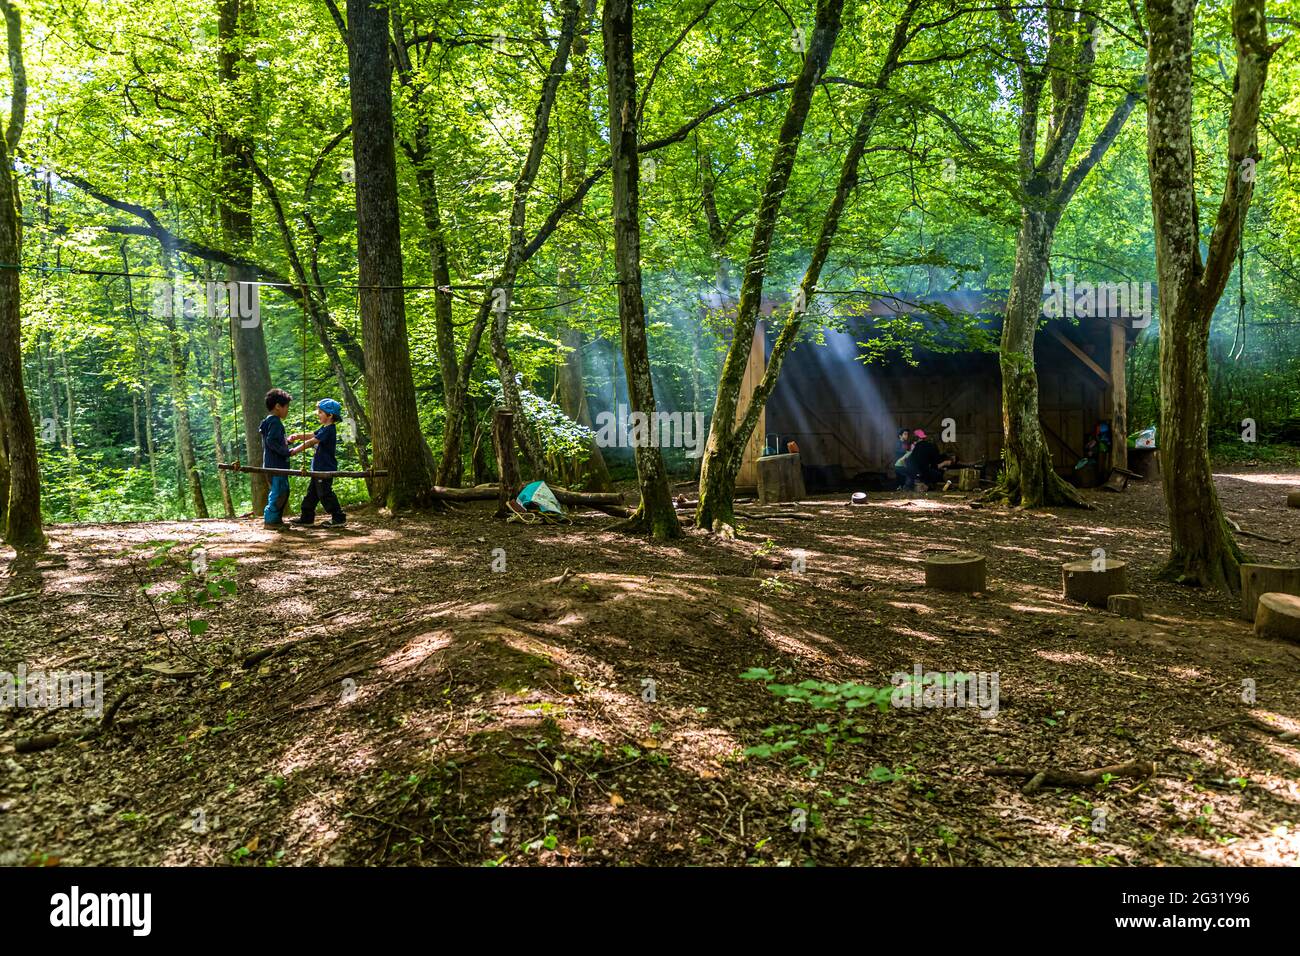 Una famiglia si rilassa in una capanna barbecue nella foresta vicino Esch-sur-Alzette, Lussemburgo. Nella riserva naturale di Ellergronn troverete anche parchi giochi per bambini lungo i sentieri escursionistici Foto Stock